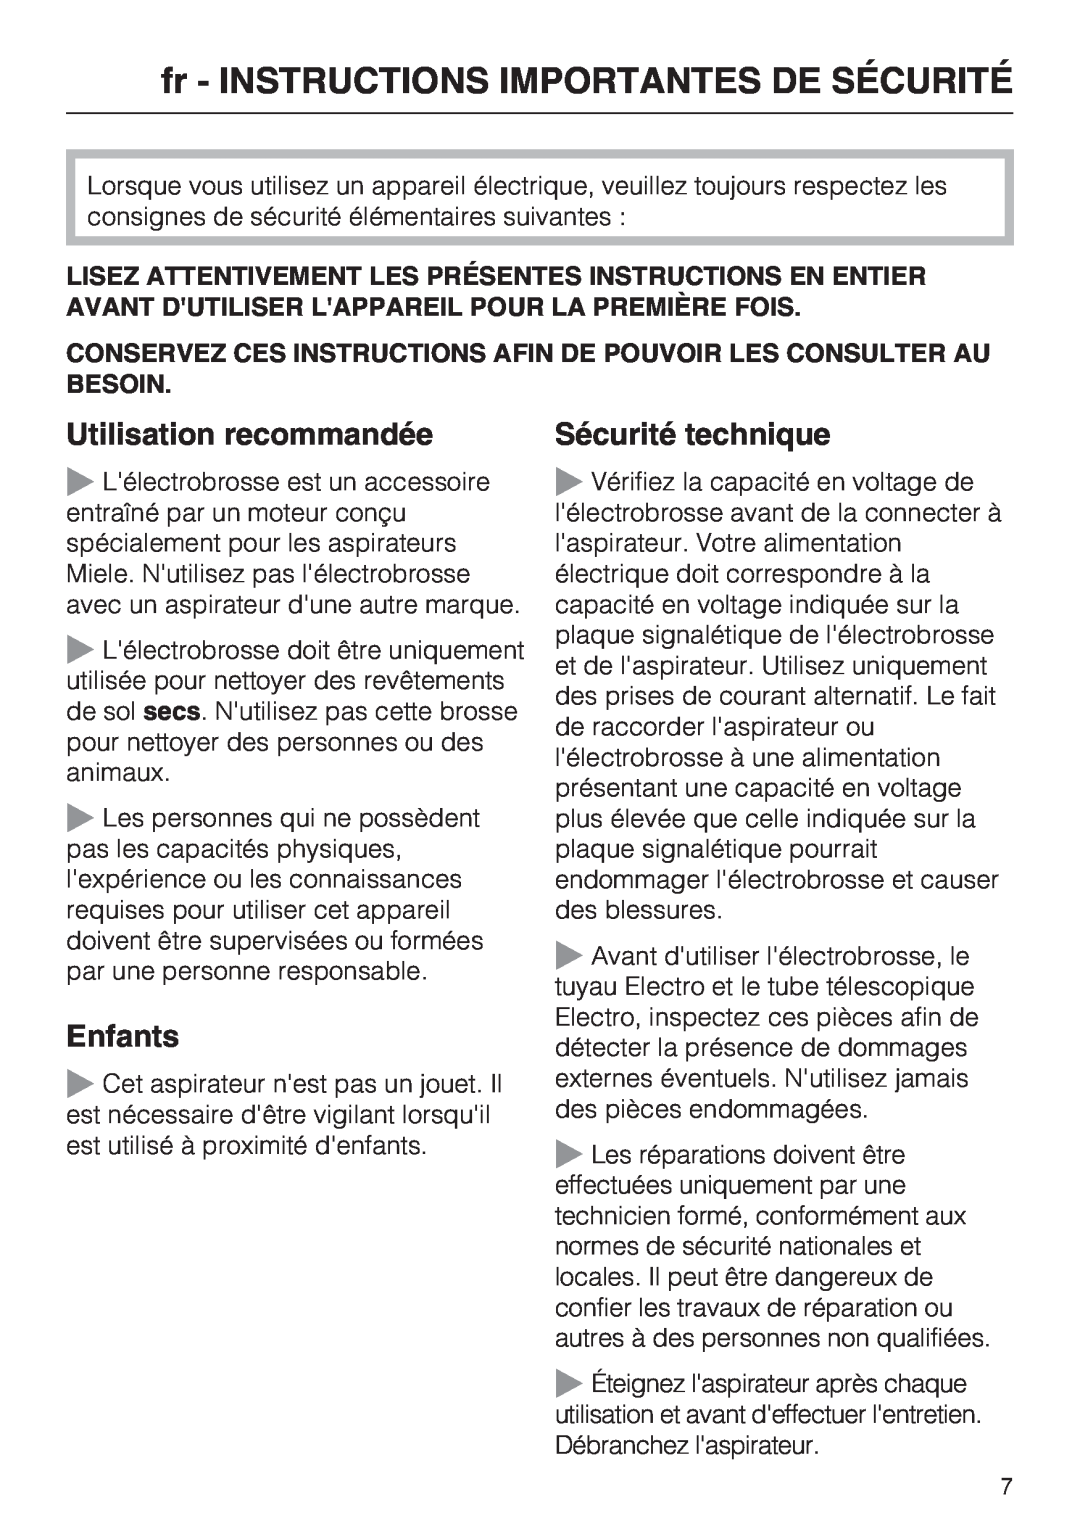 Miele SEB 228 manual fr - INSTRUCTIONS IMPORTANTES DE SÉCURITÉ, Utilisation recommandée, Enfants, Sécurité technique 